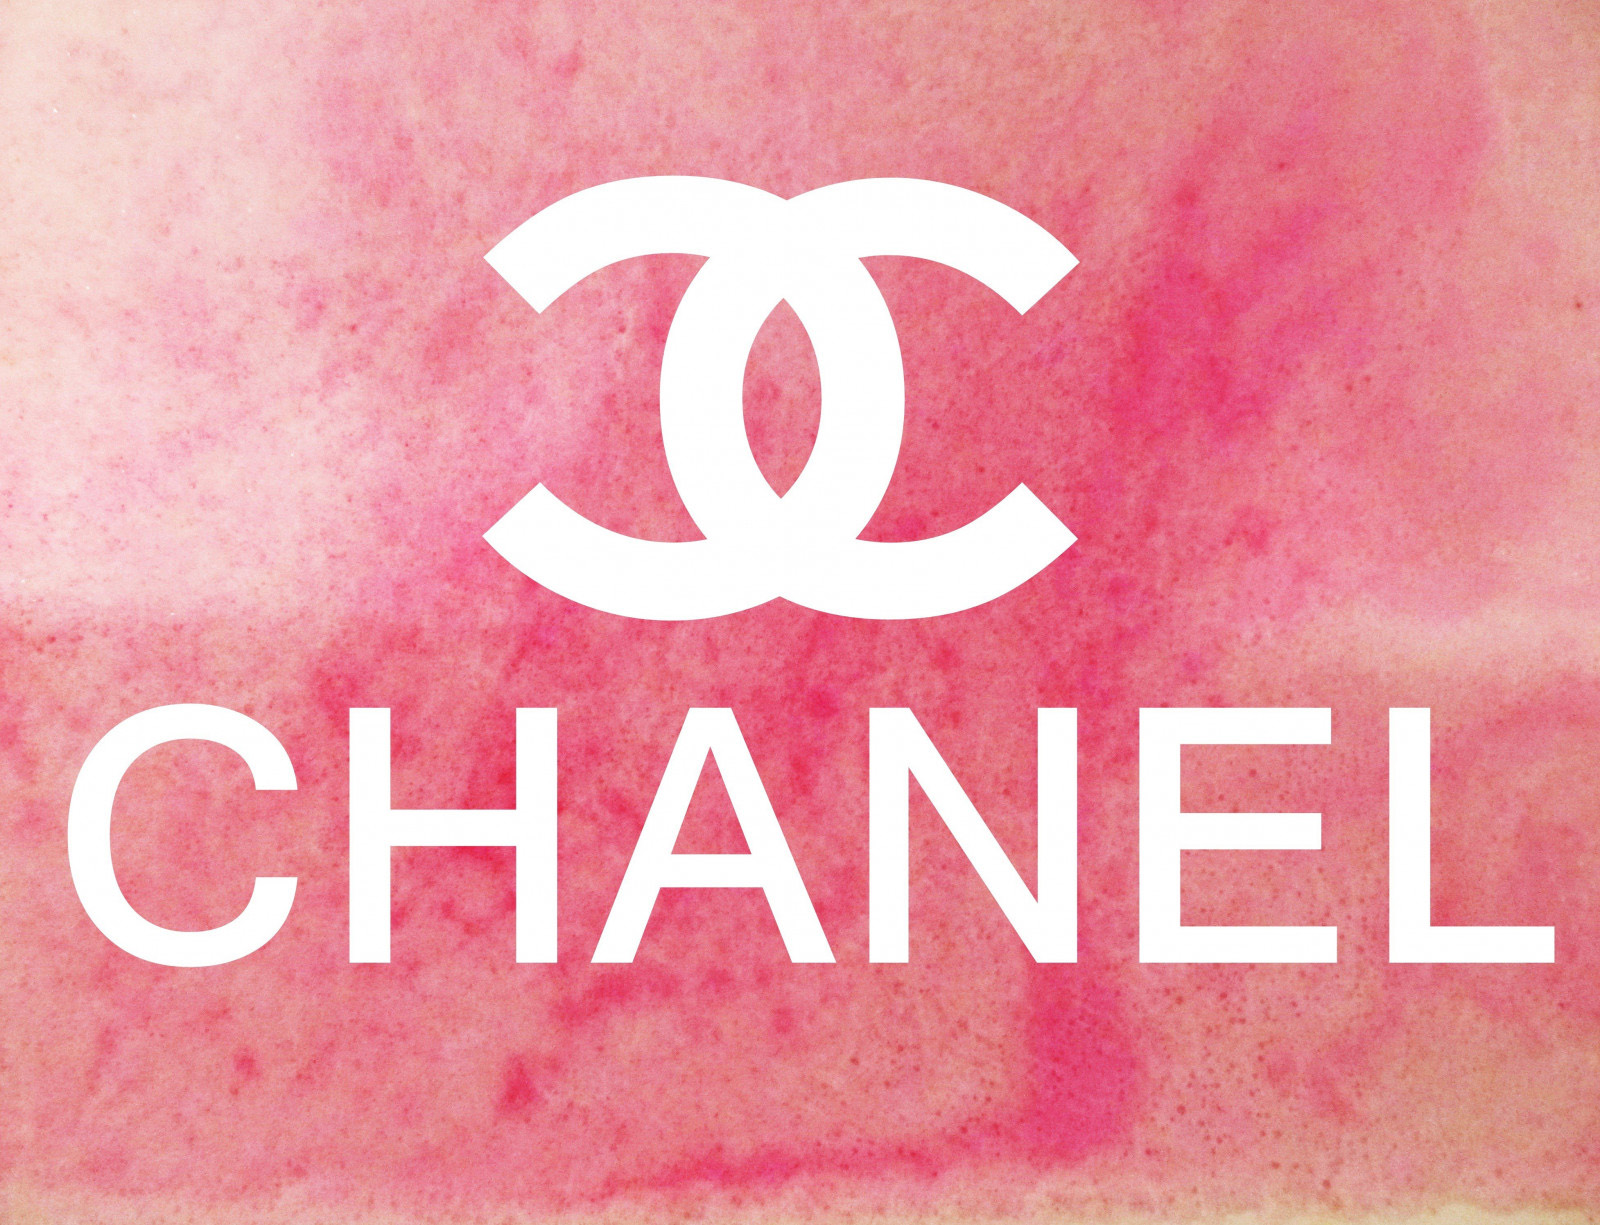 Tổng hợp hình nền Chanel đẹp và sang trọng